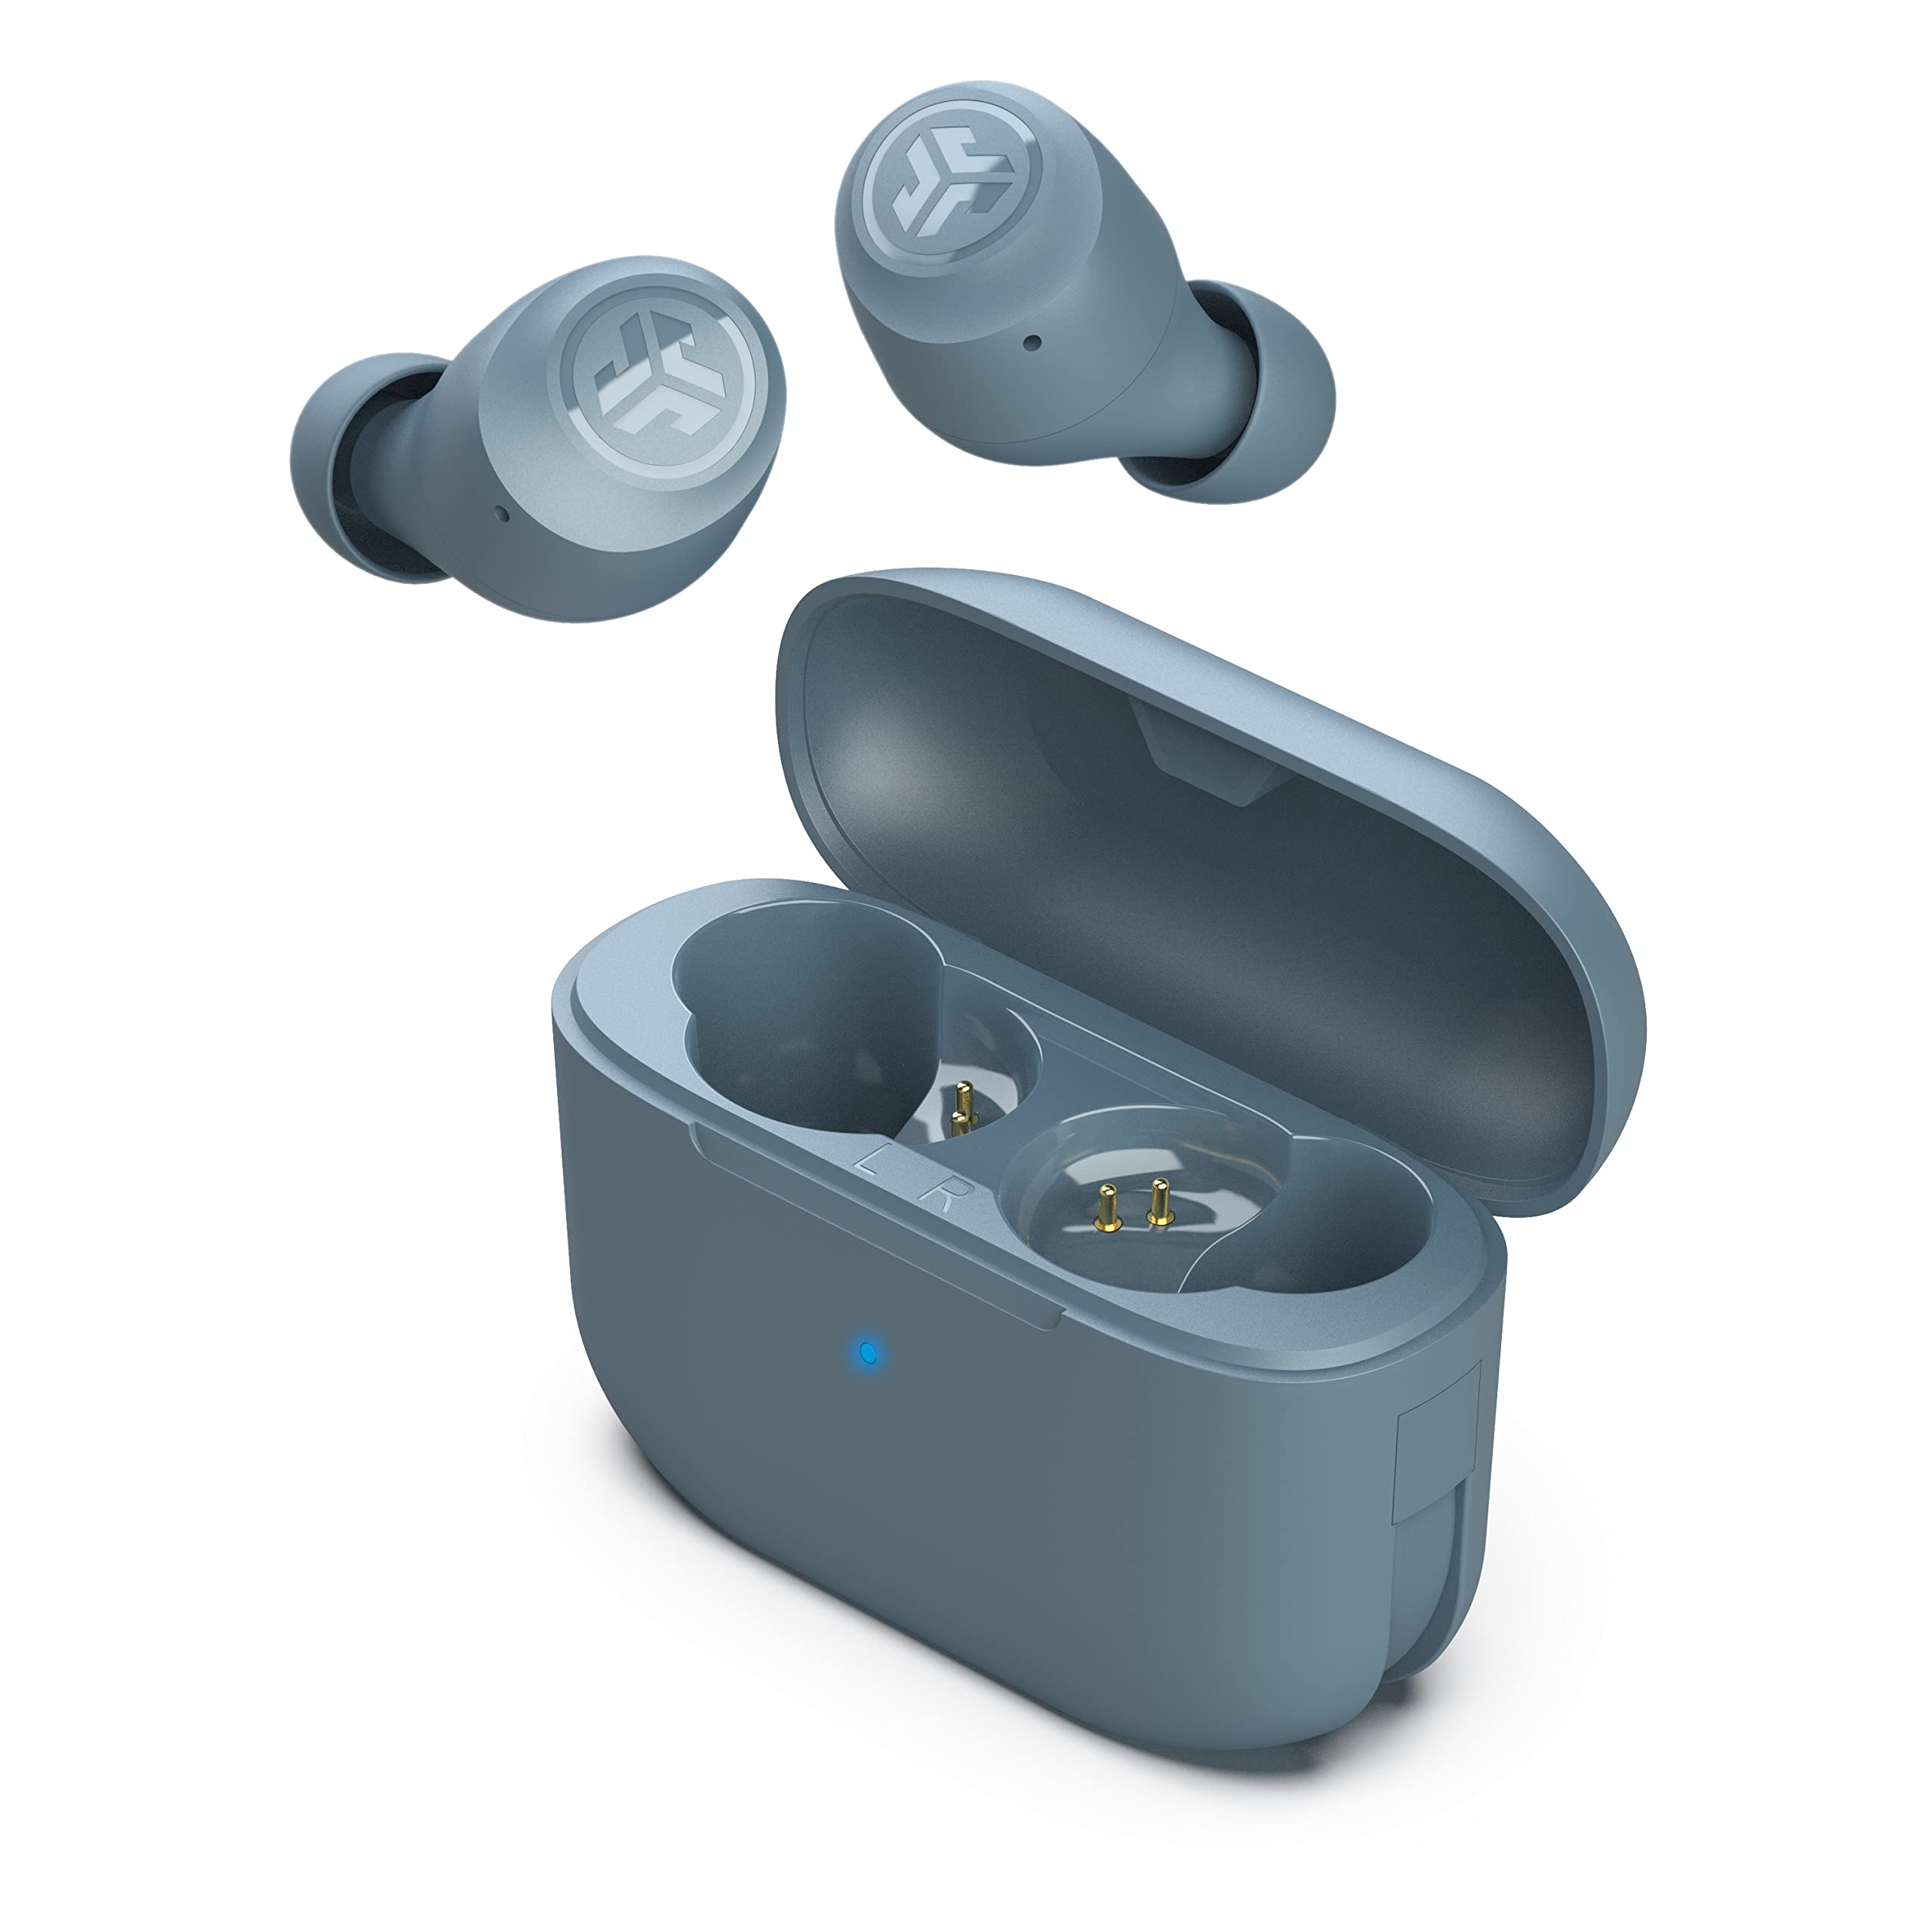  JLAB Go Air Pop トゥルー ワイヤレス Bluetooth イヤホン + 充電ケース |スレート |デュアル接続 | IPX4 耐汗性 | Bluetooth 5.1接続 | 3 EQ サウンド設定 シグネチ...